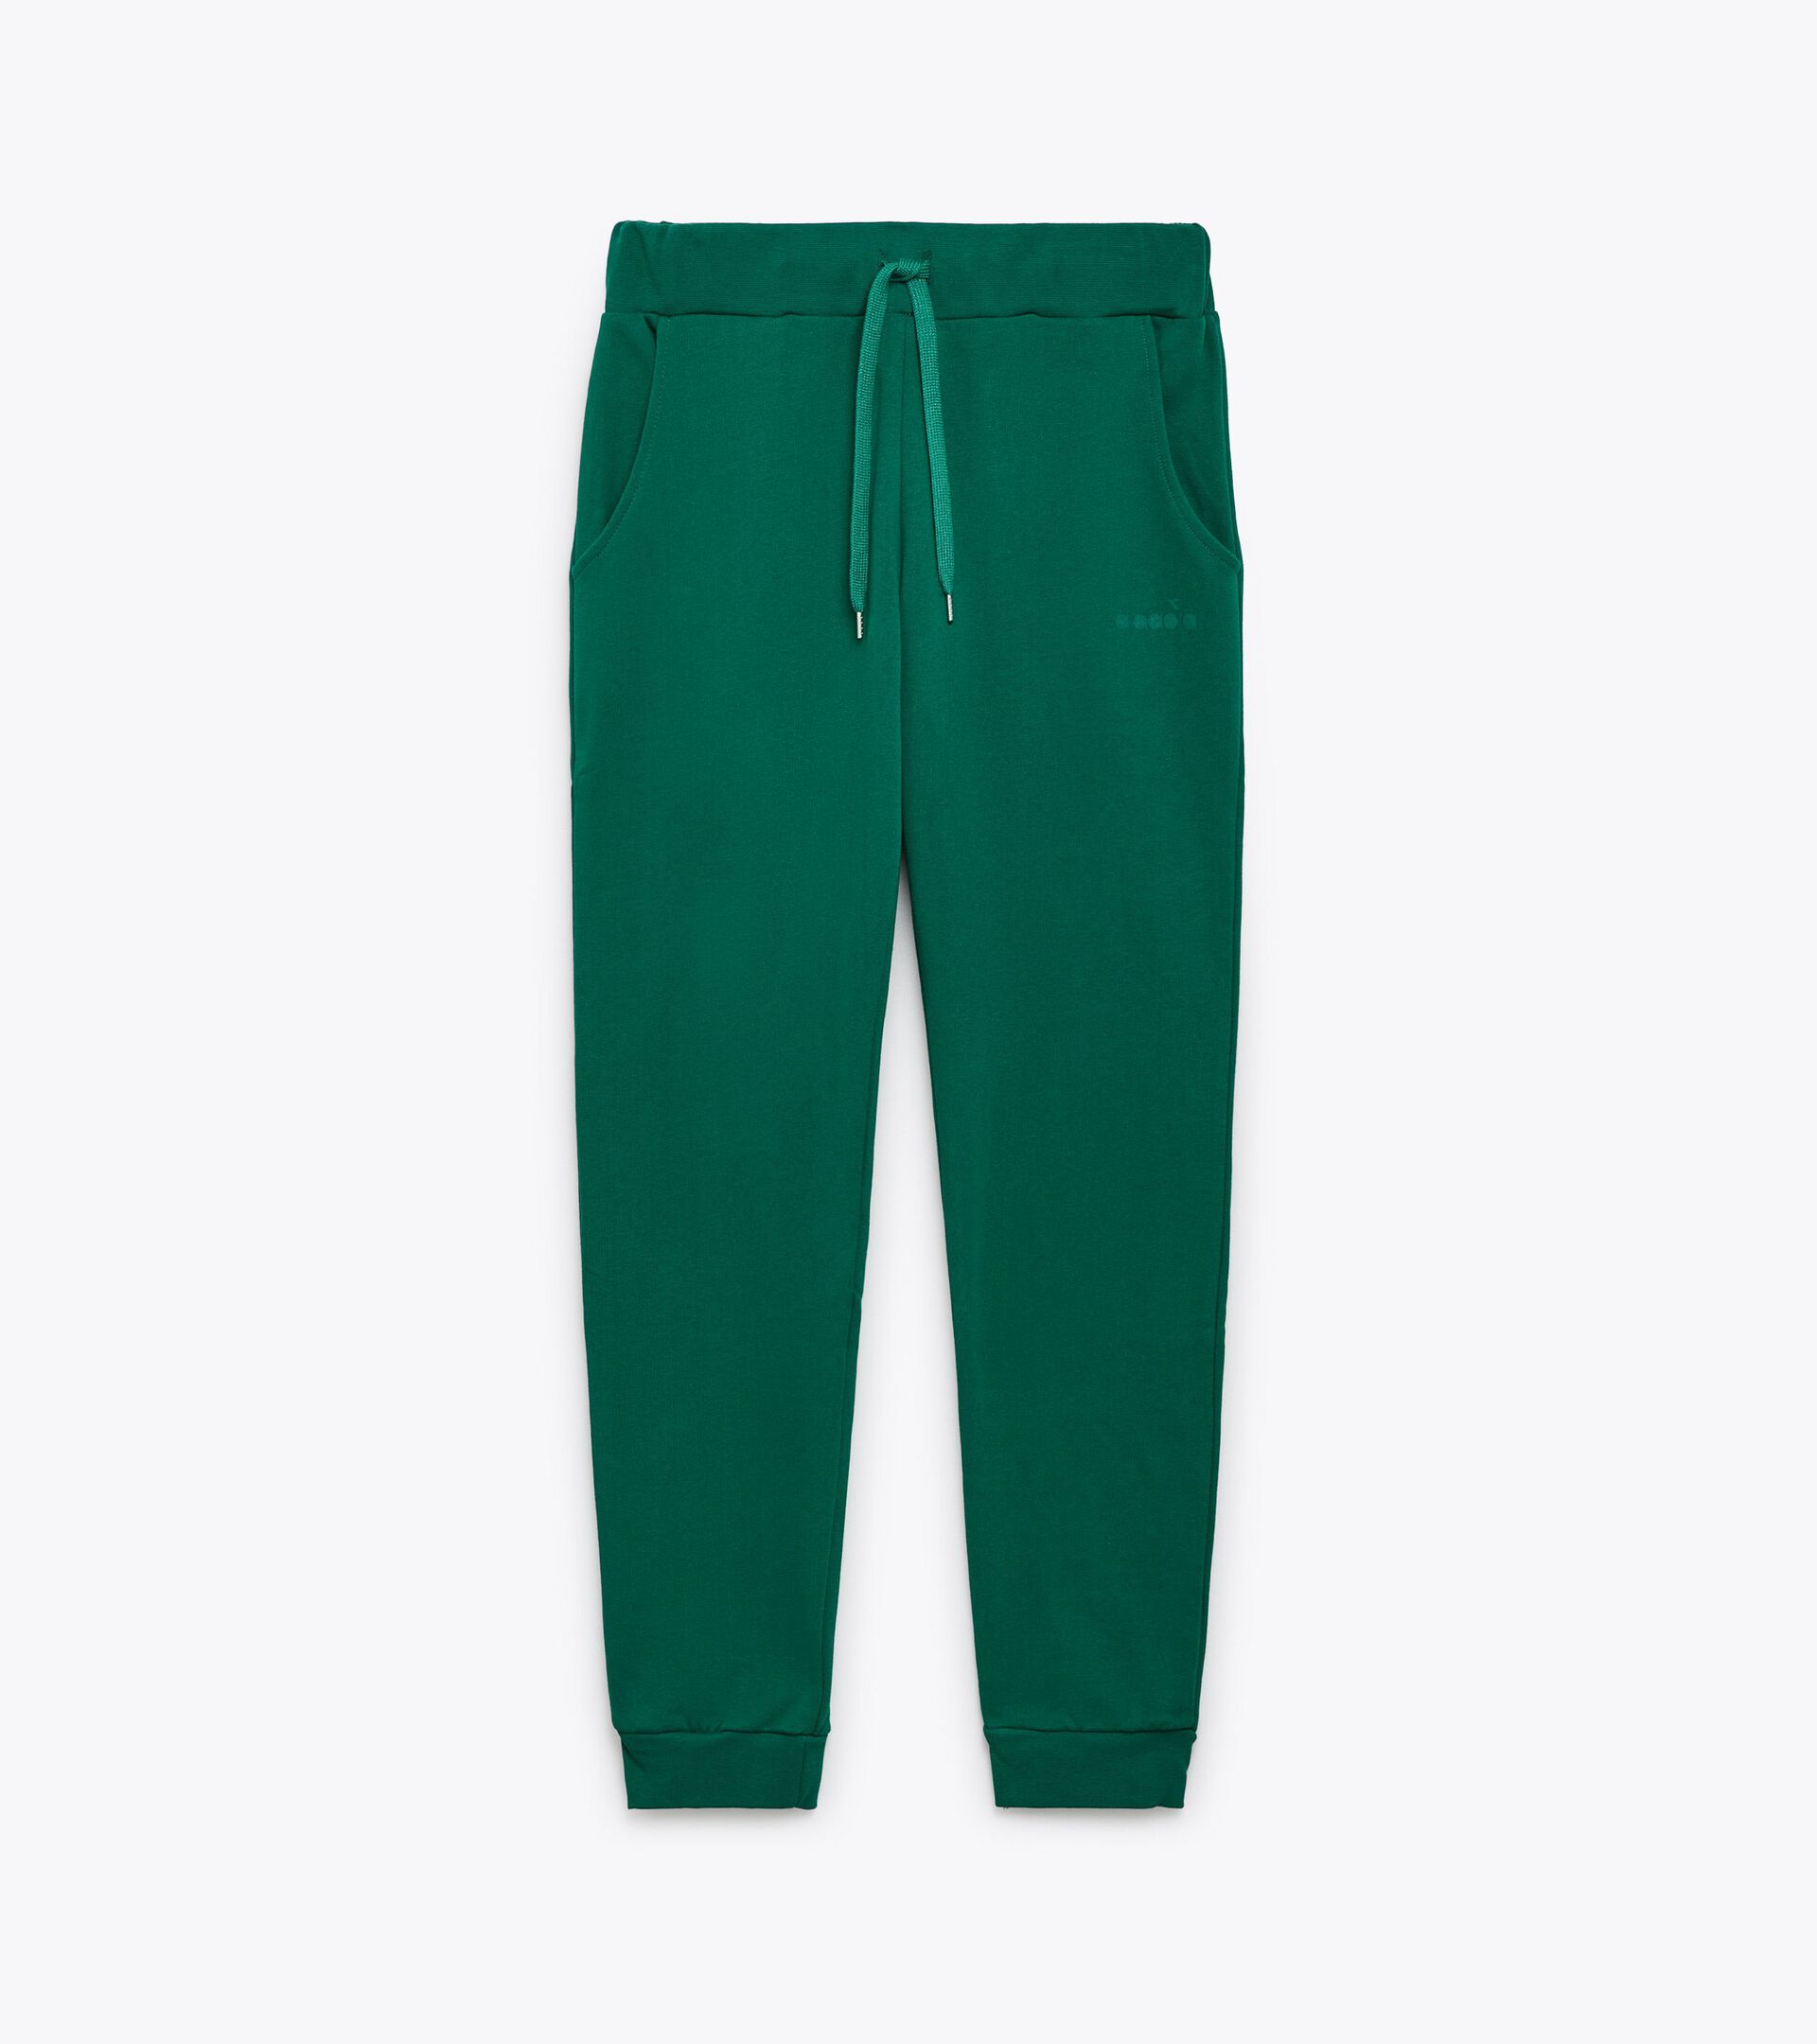 Pantalón deportivo - Made in Italy - Gender neutral PANTS LOGO VERDE VENTURINA - Diadora